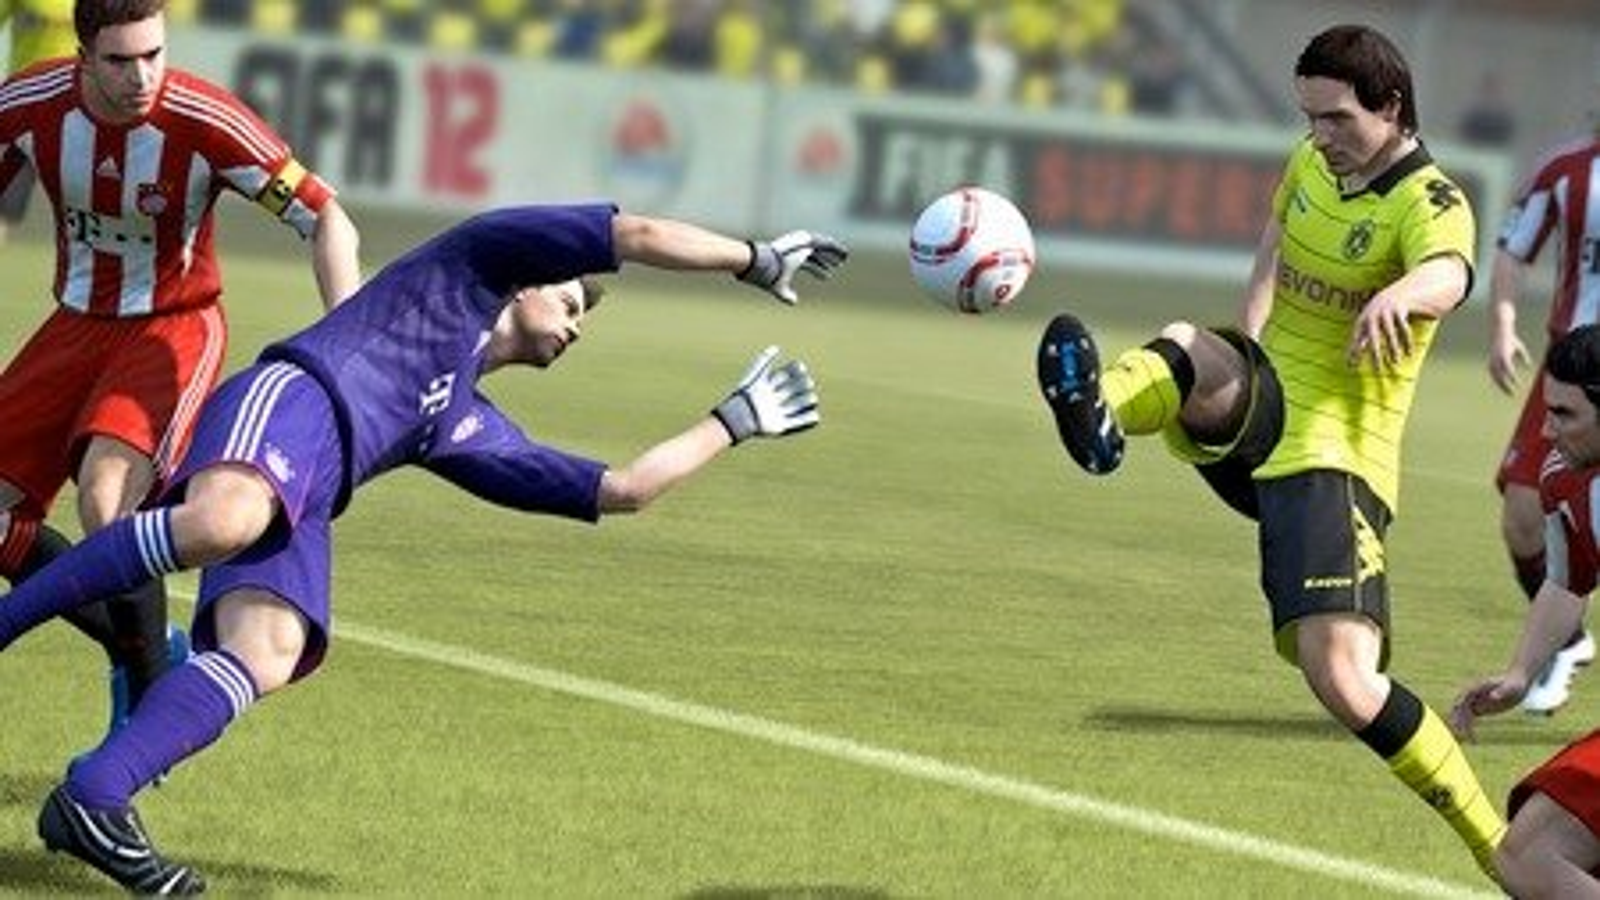 FIFA 12 atinge 5 milhões de vendas